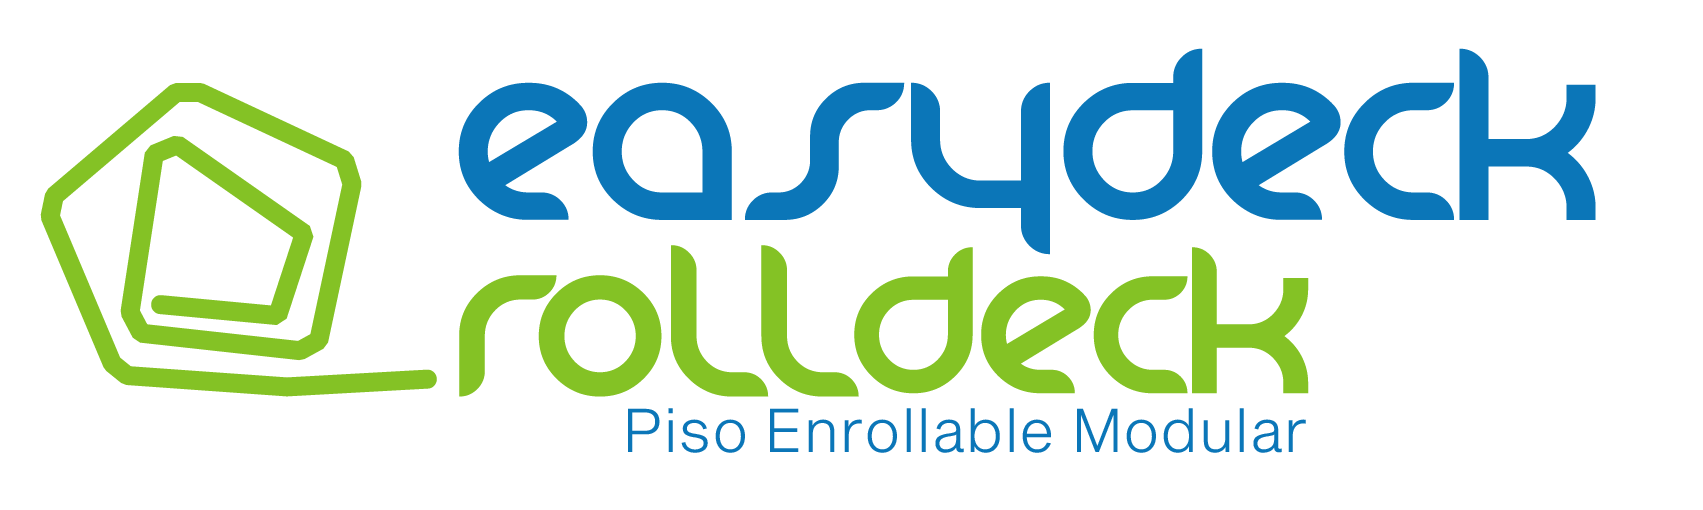 Logo a color de easydeck® rolldeck piso enrollable modular para eventos y senderos